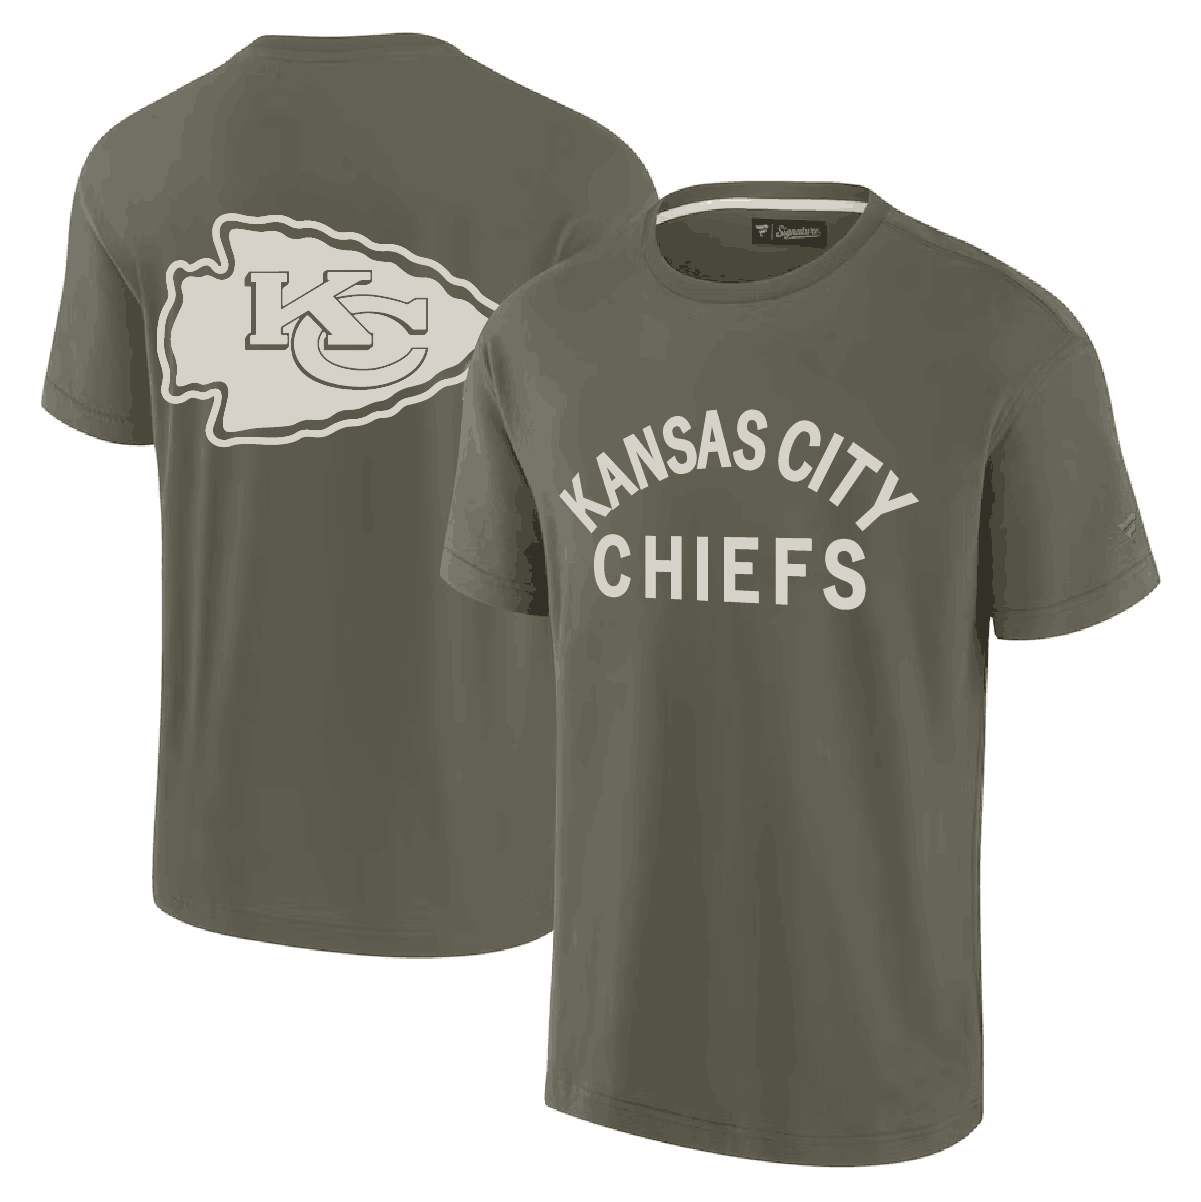 Men's Kansas City Chiefs Olive Elements Super Soft T-Shirt